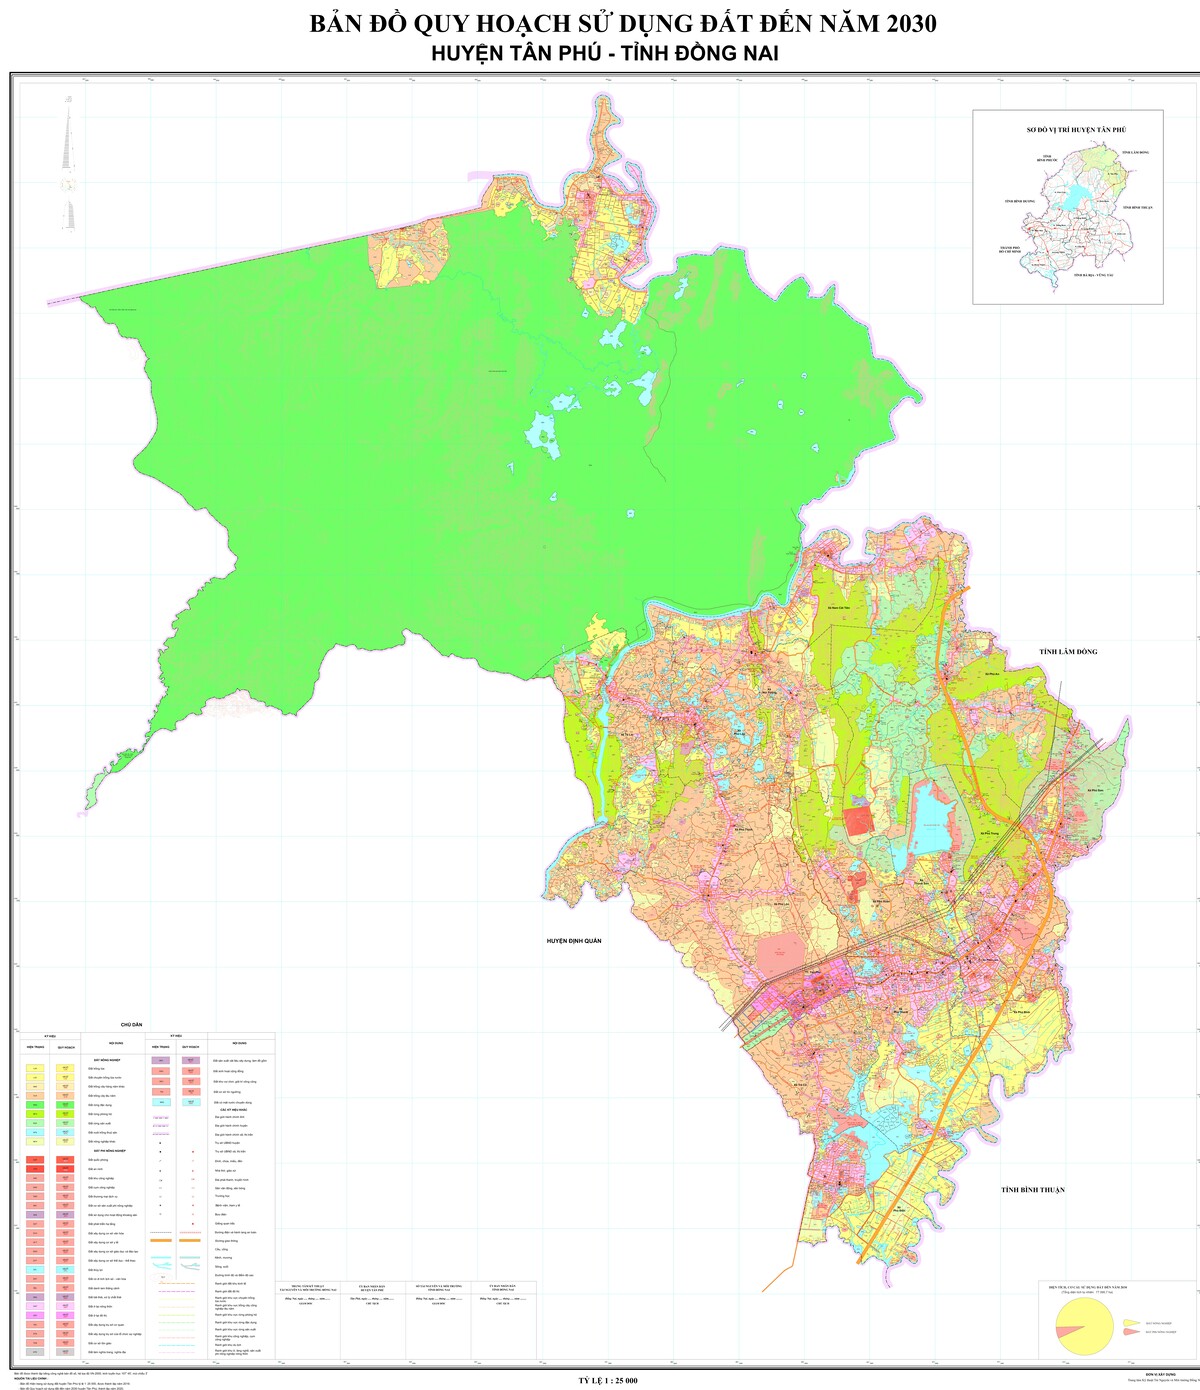 Bản đồ quy hoạch huyện Tân Phú, tỉnh Đồng Nai đến năm 2030